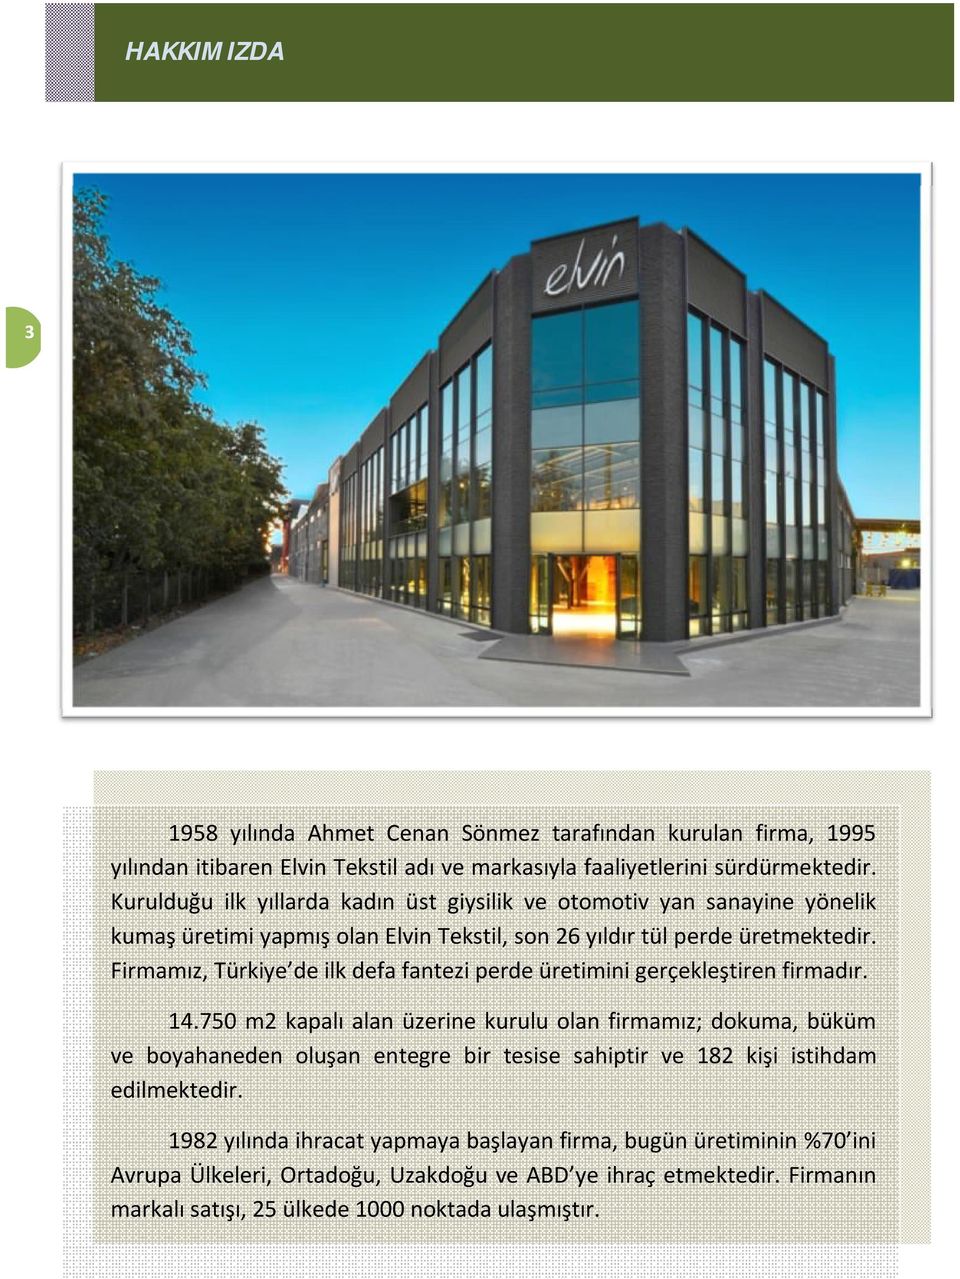 Firmamız, Türkiye de ilk defa fantezi perde üretimini gerçekleştiren firmadır. 14.